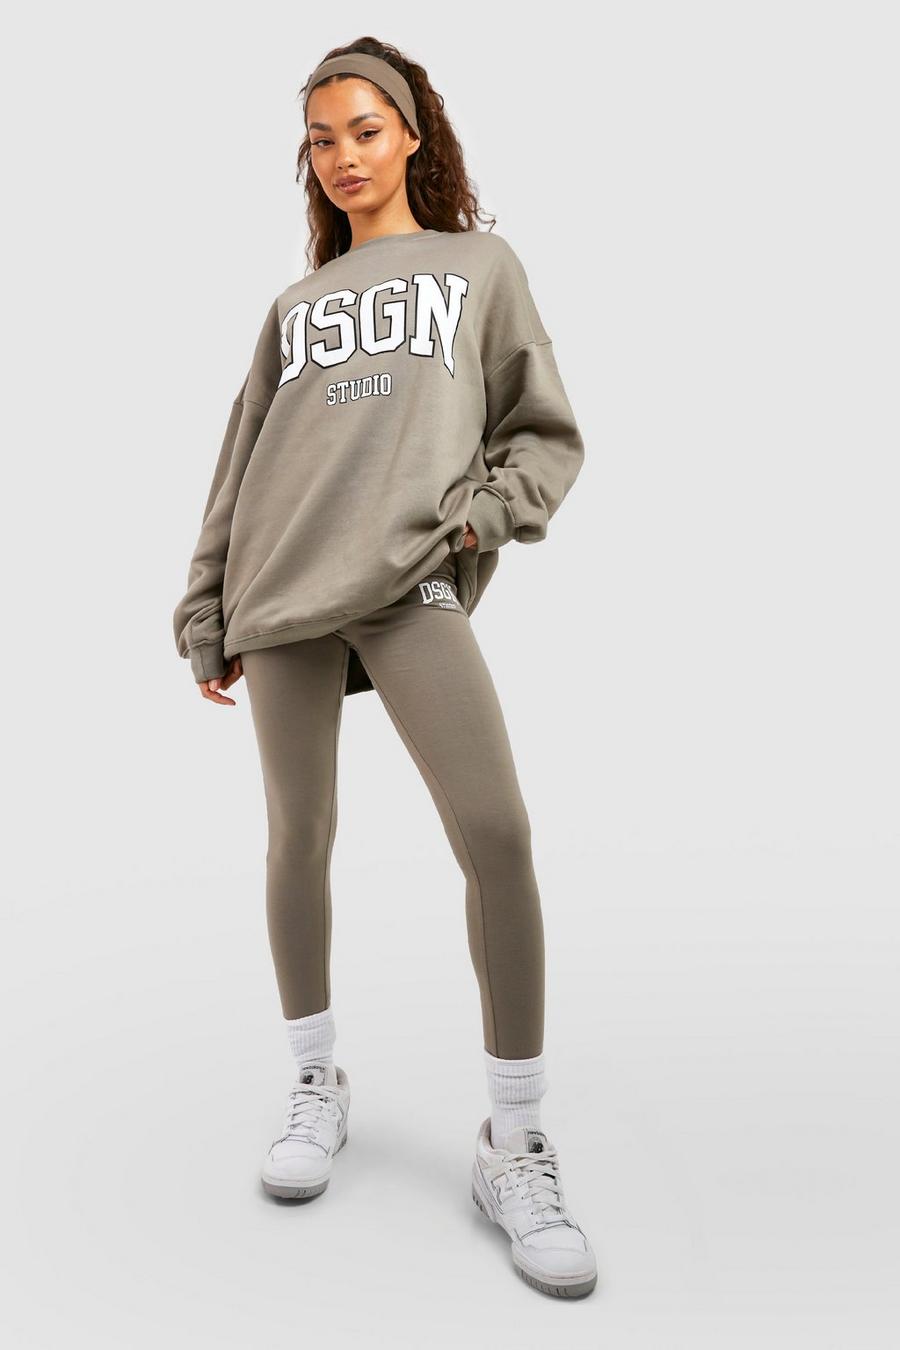 Chándal con leggings, sudadera y eslogan Collegiate Dsgn Studio image number 1